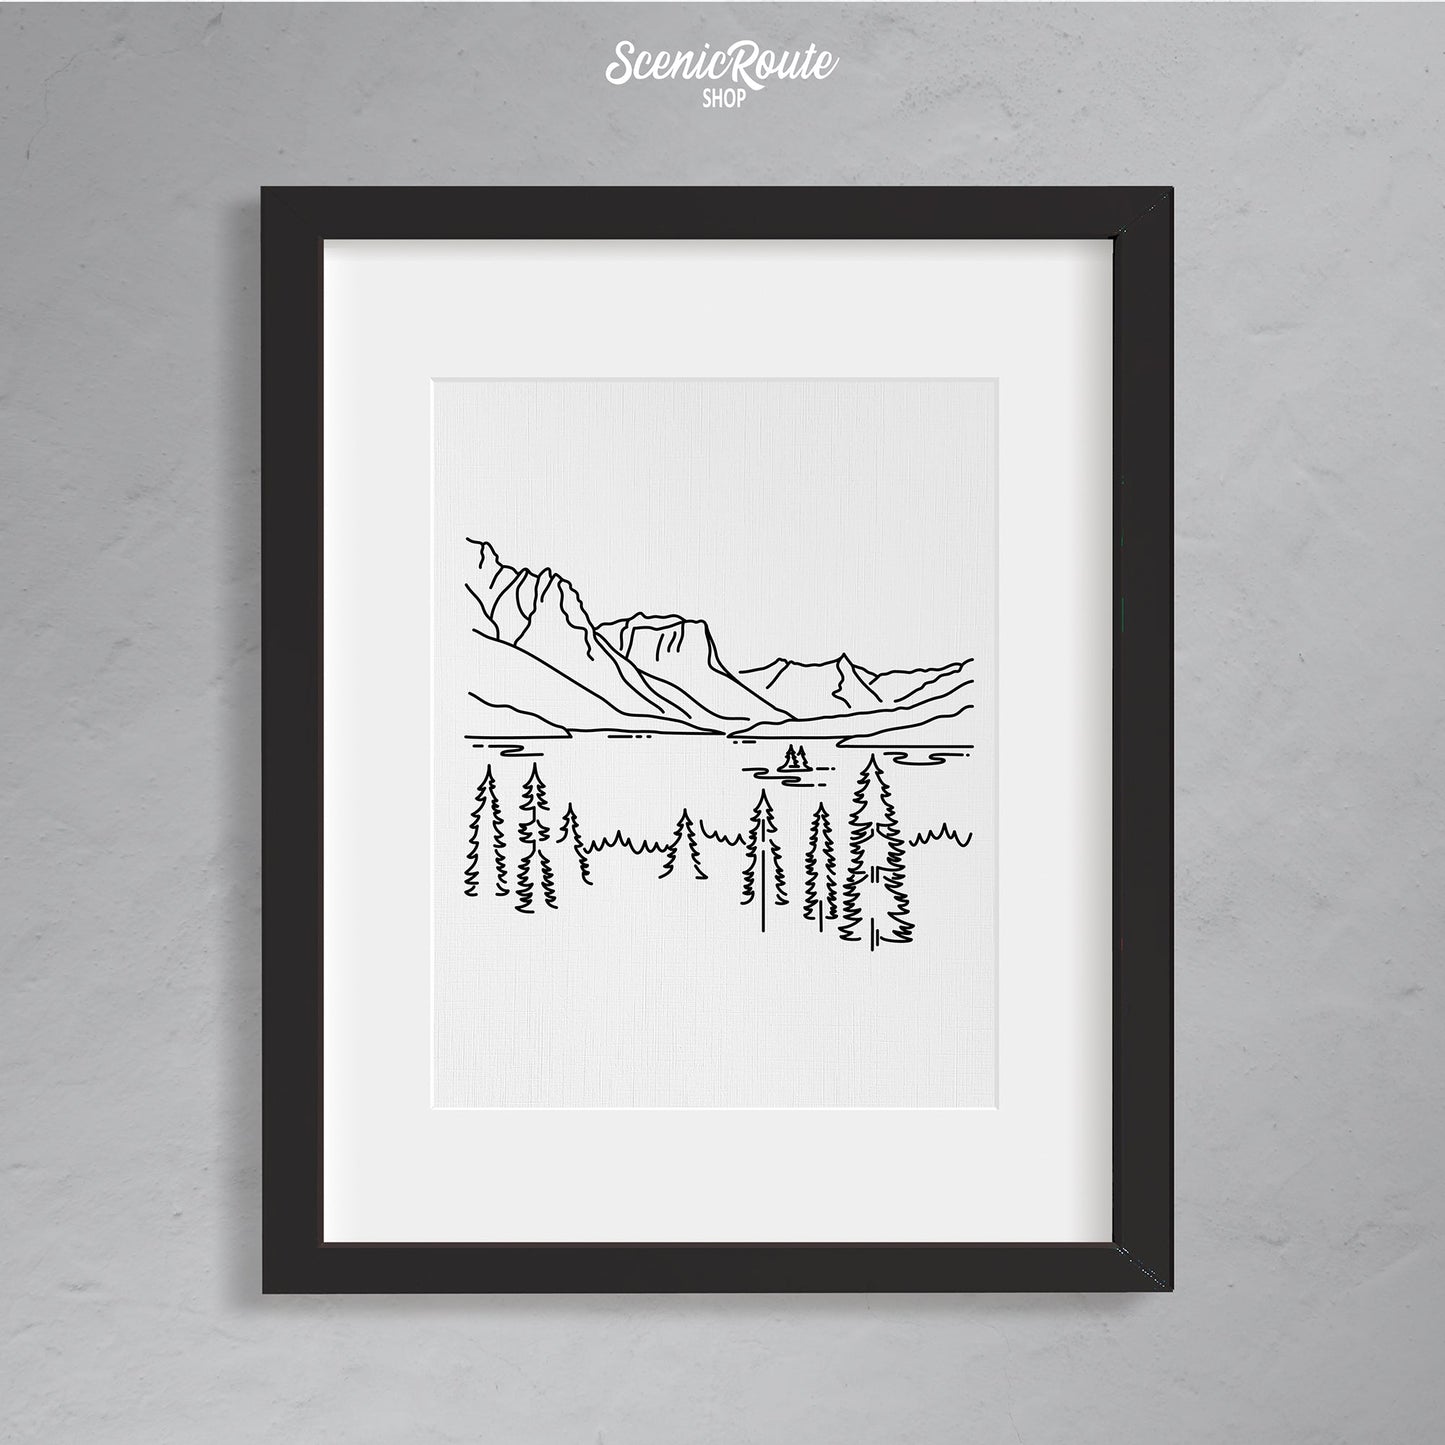 A framed line art drawing of Glacier National Park